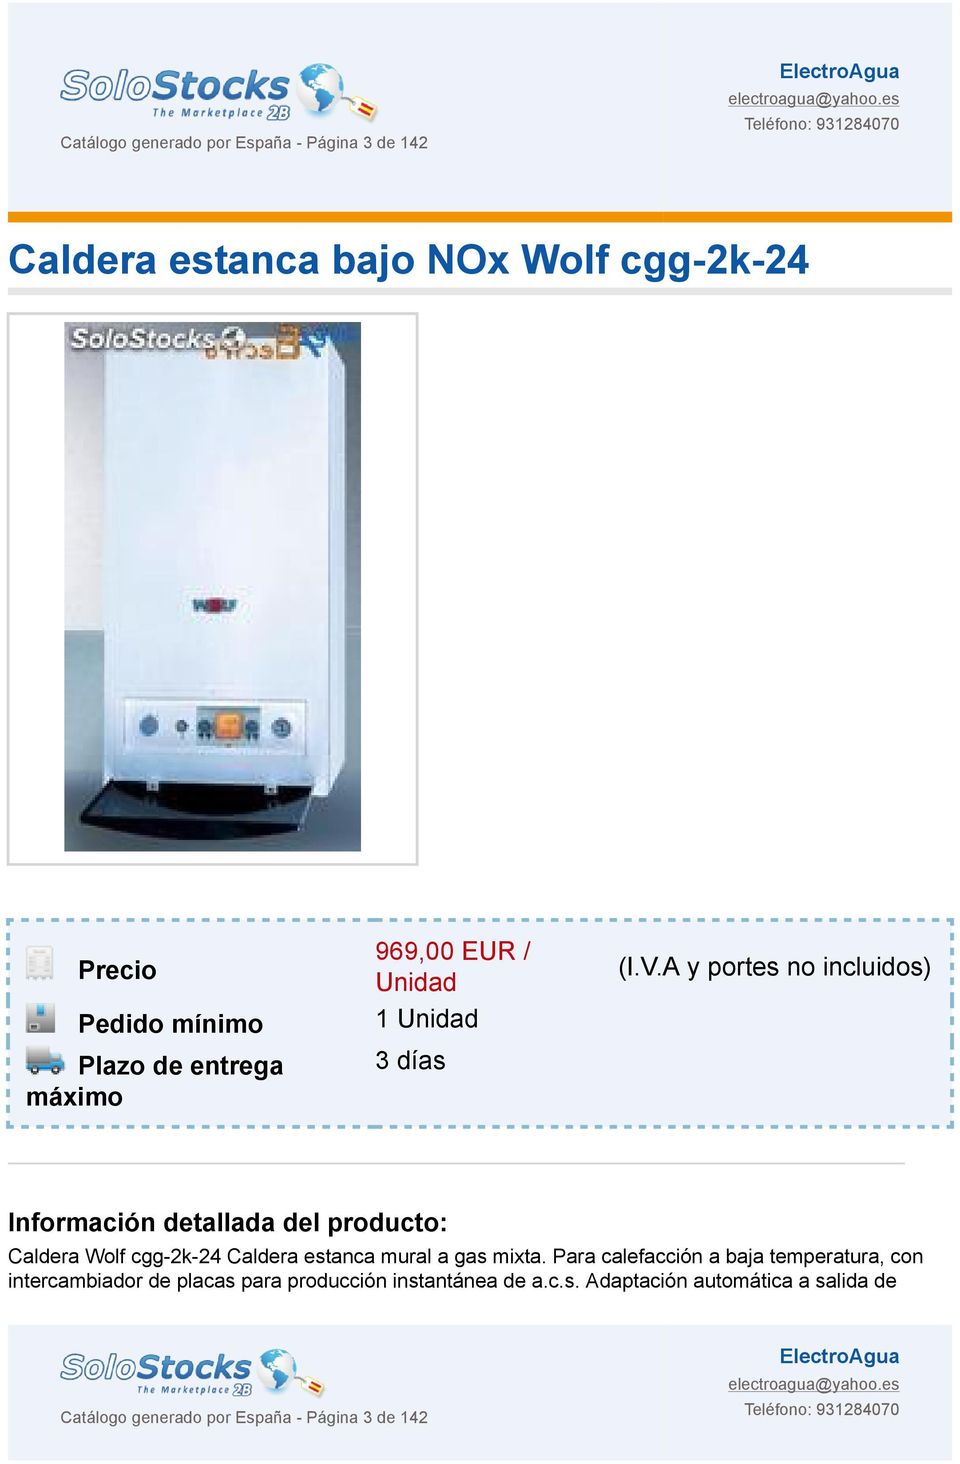 A y portes no incluidos) Información detallada del producto: Caldera Wolf cgg-2k-24 Caldera estanca mural a gas mixta.